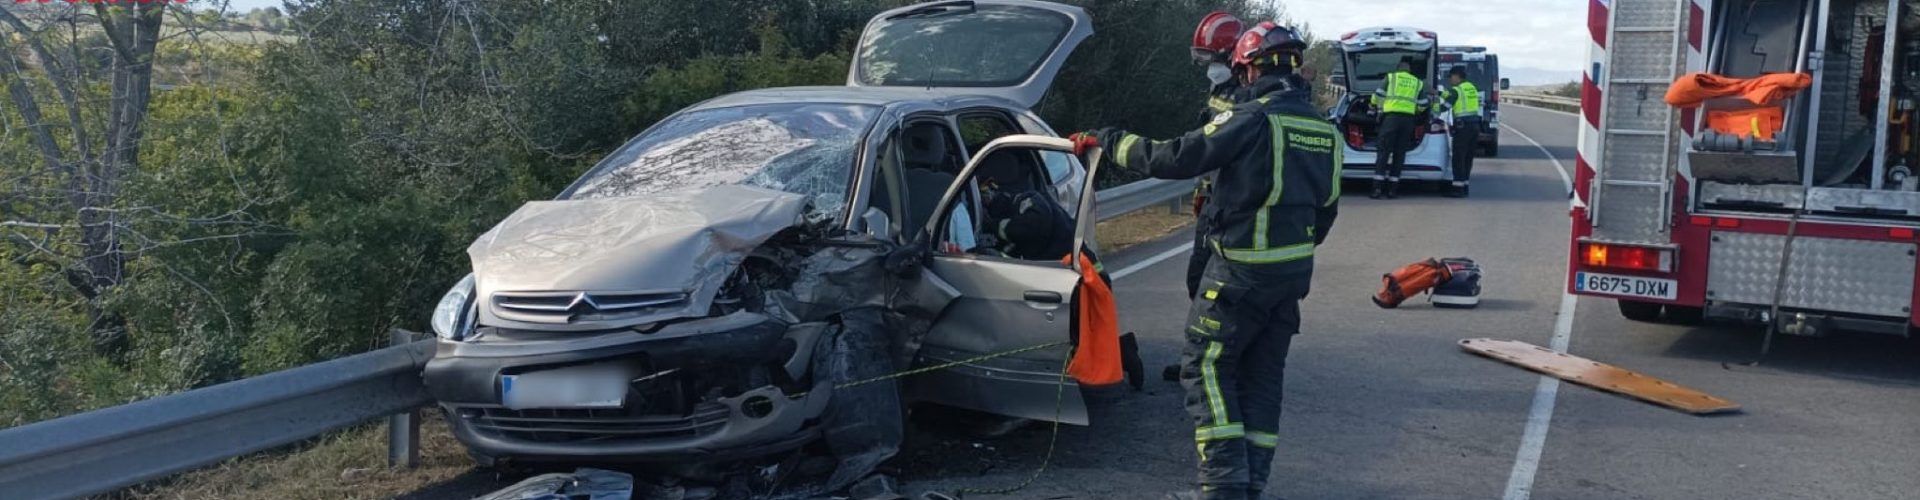 Tres personas heridas en accidente en la N238, “carretera d’Ulldecona”